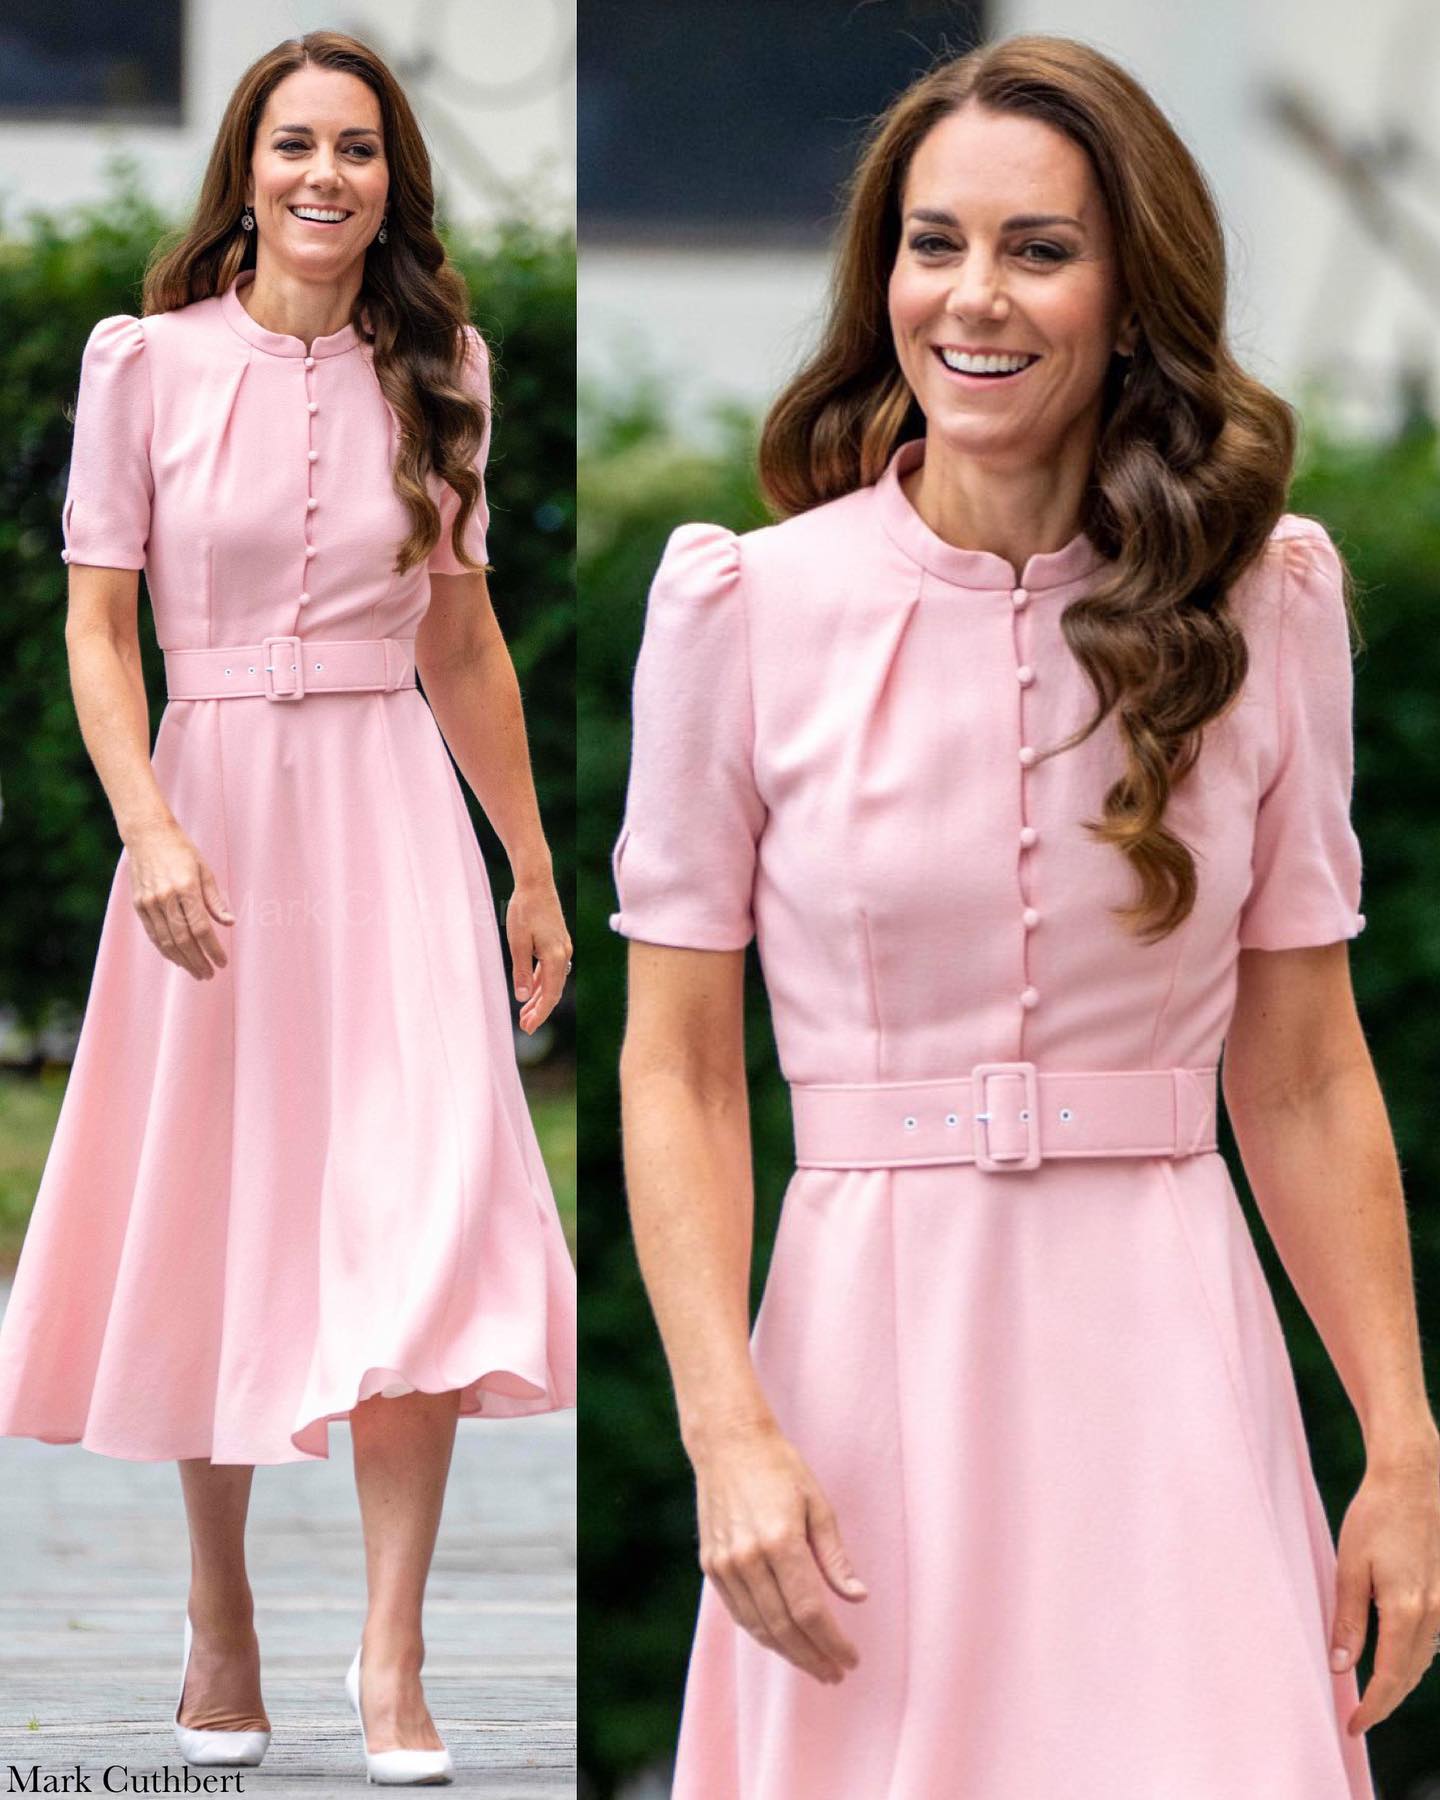 Принцесса Кейт Миддлтон очаровала публику в нежно-розовом платье своего любимого фасона